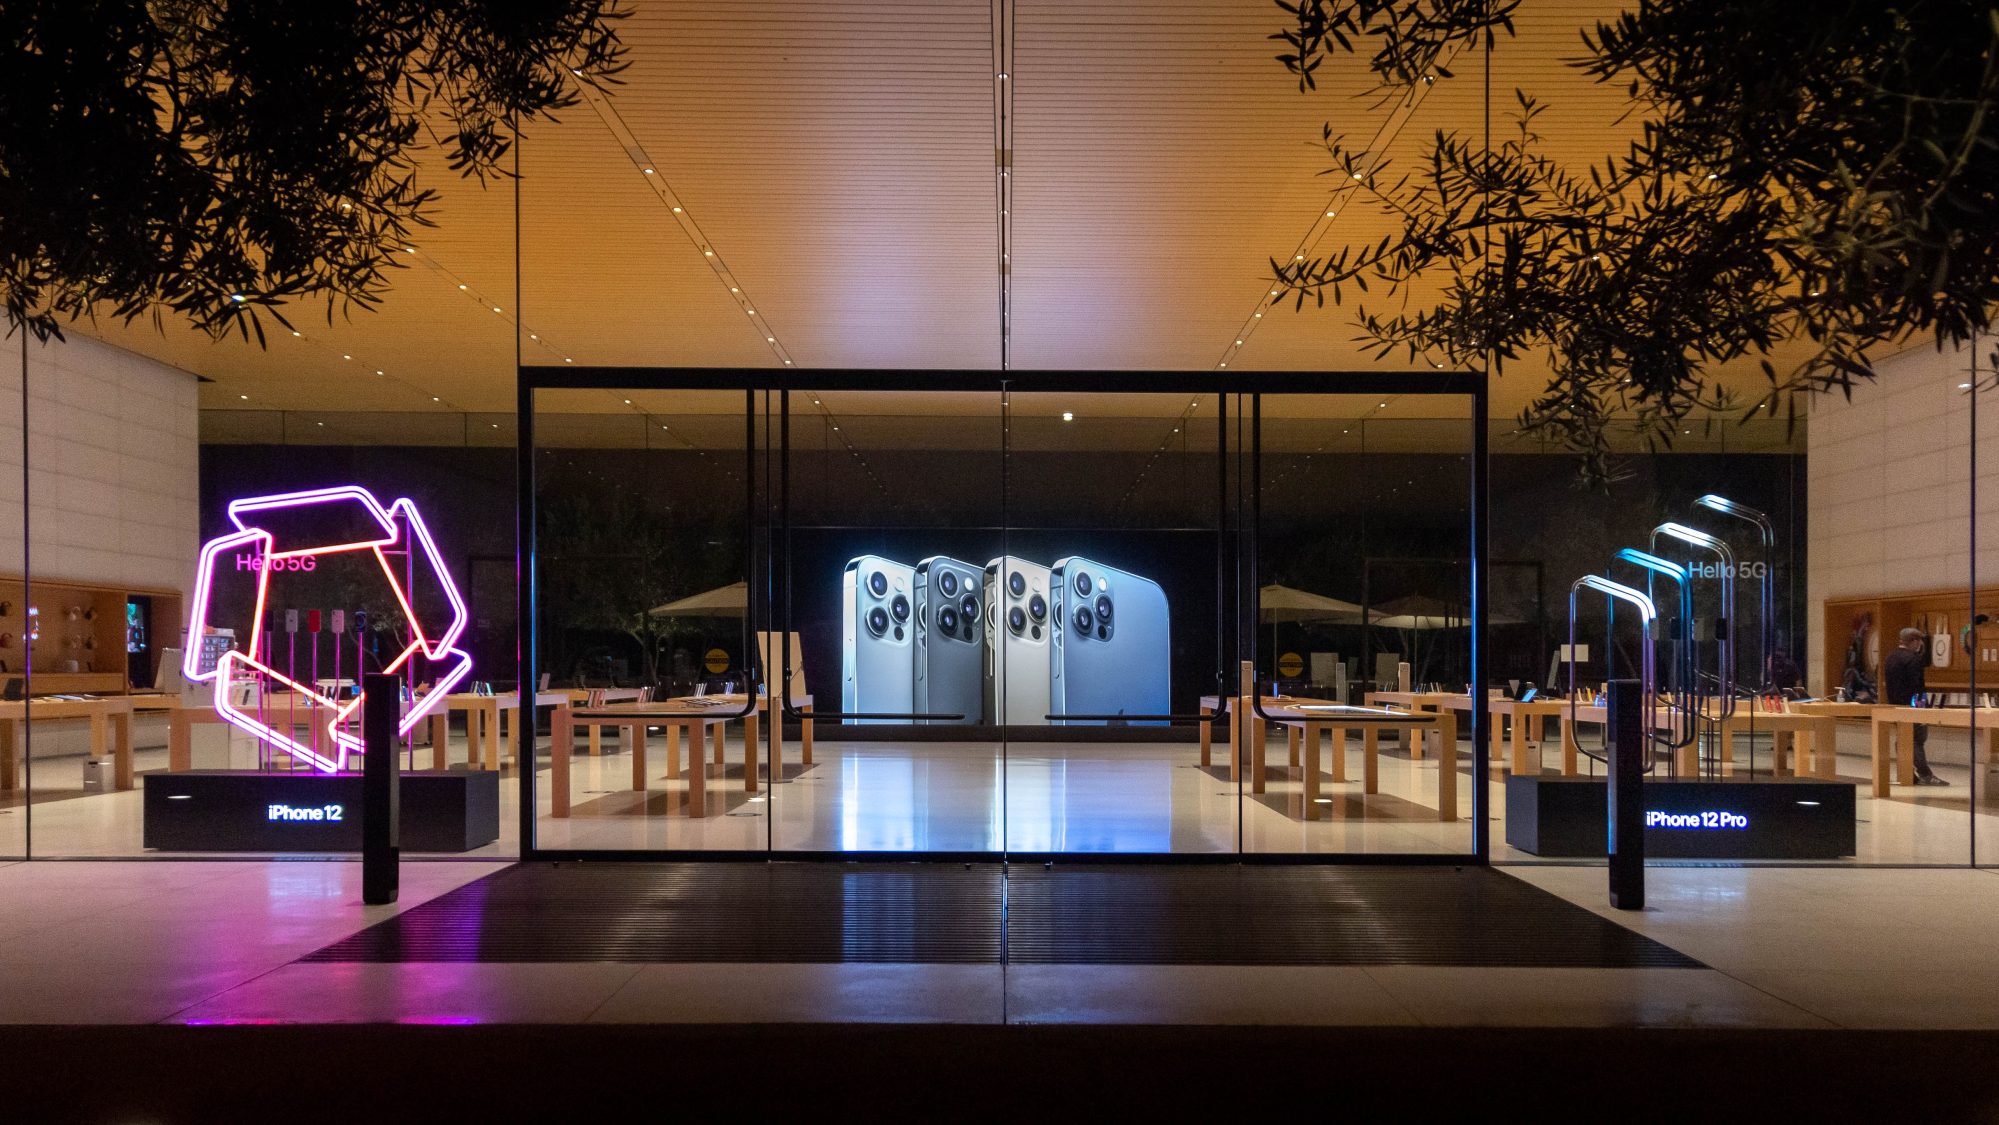 Apple Store ตกแต่งร้านเข้าบรรยากาศเปิดขาย iPhone 12, iPhone 12 Pro - iMoD